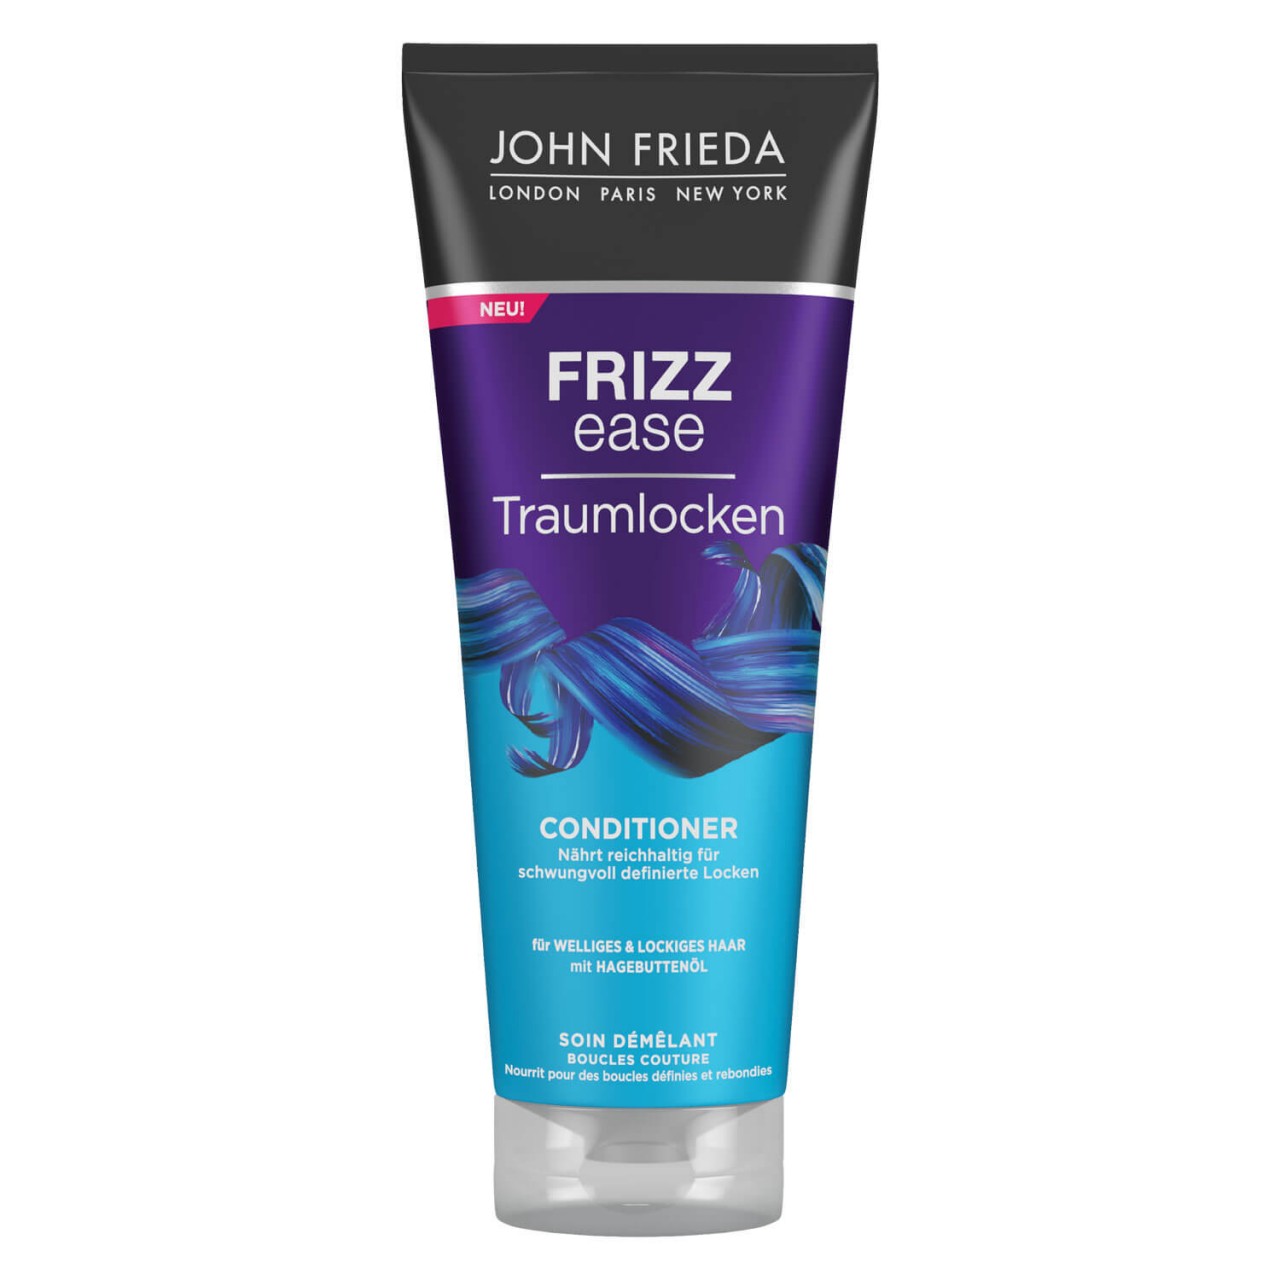 Frizz Ease - Traumlocken Conditioner von John Frieda